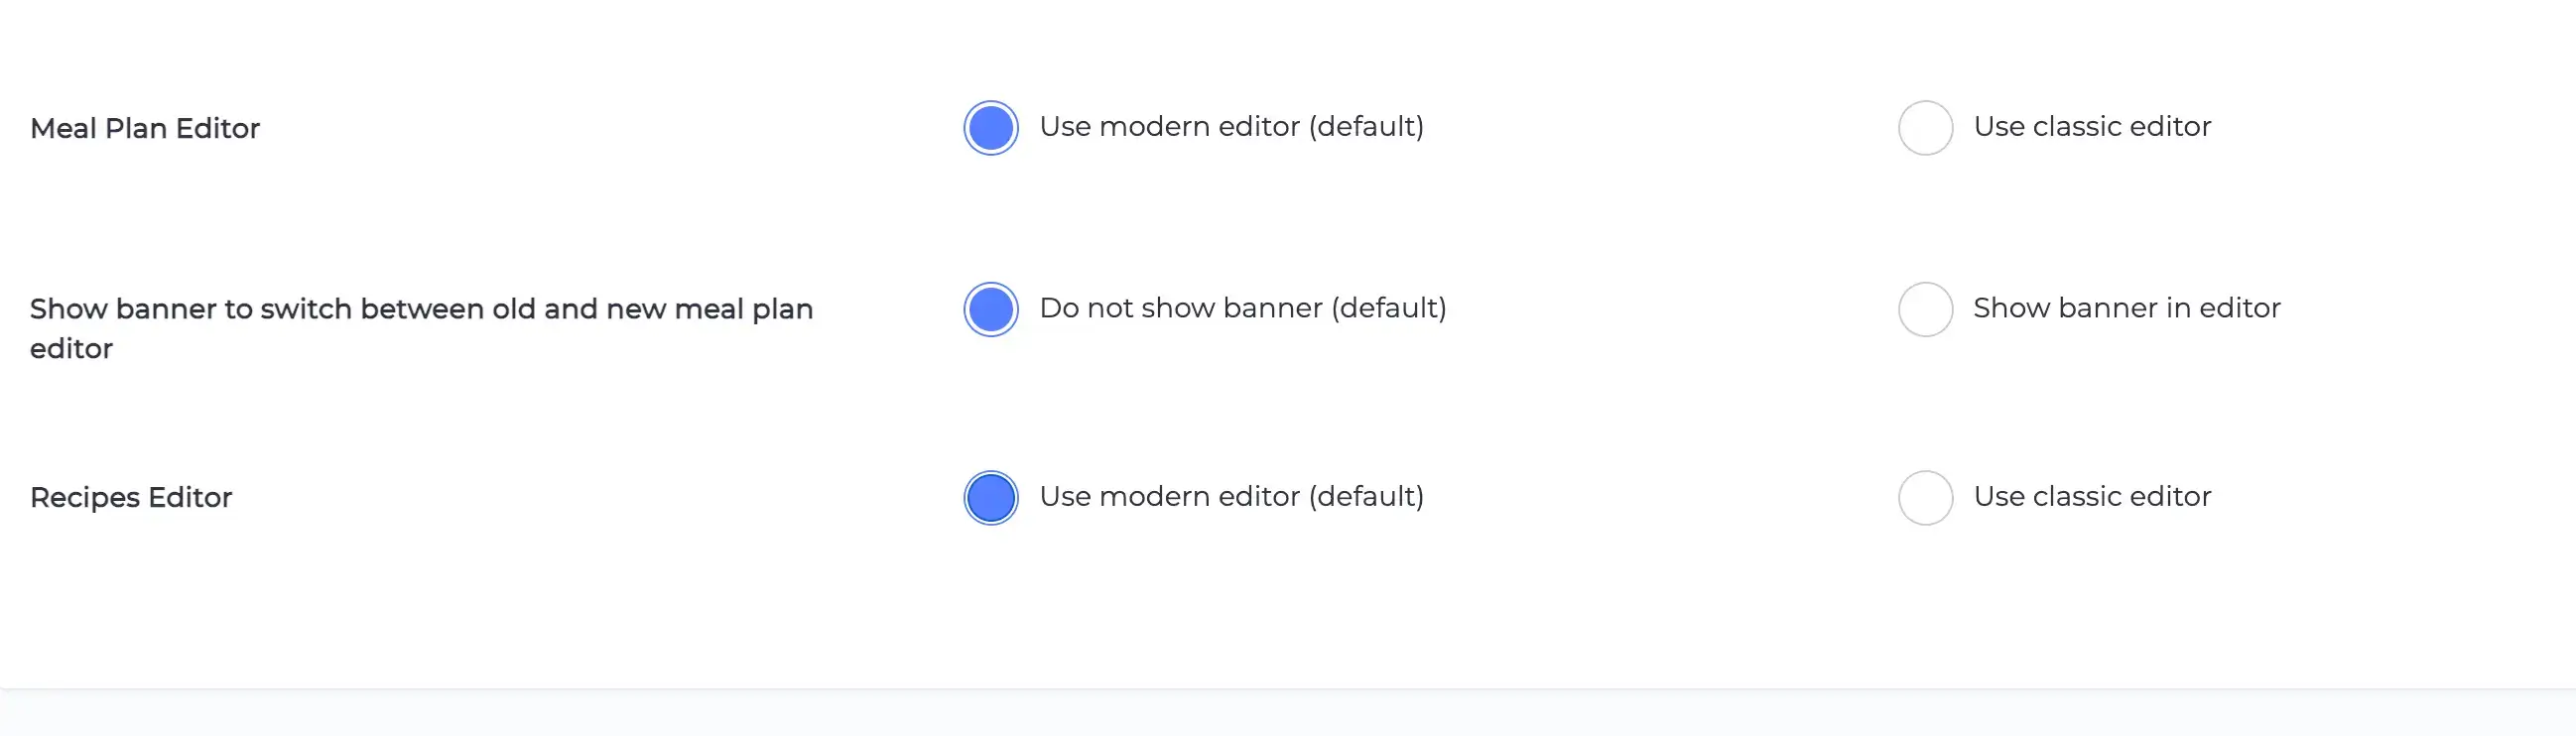 change editor settings